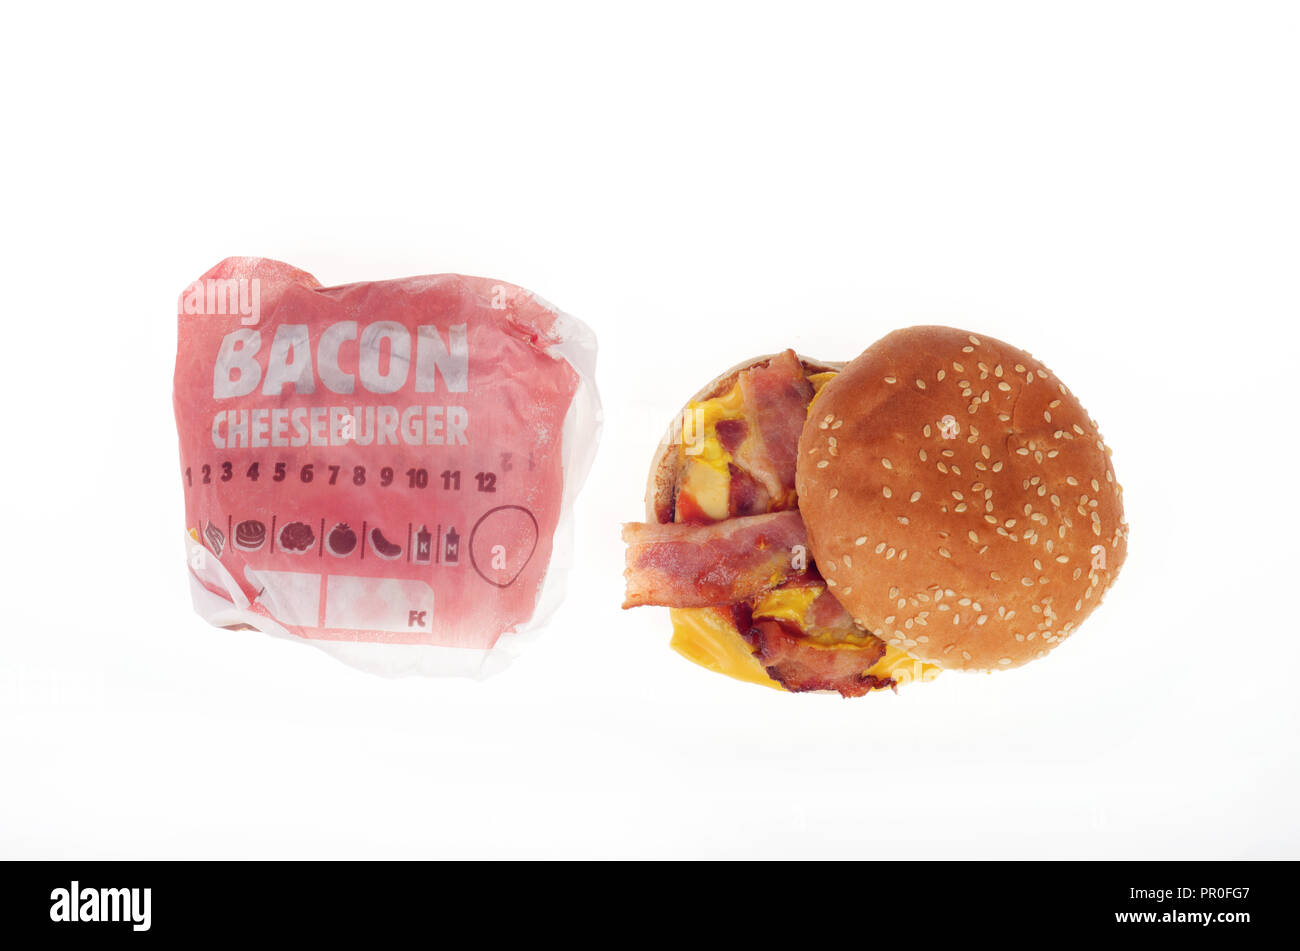 2 Burger King Bacon cheeseburgers un ouvert et 1 en pack sur fond blanc Banque D'Images